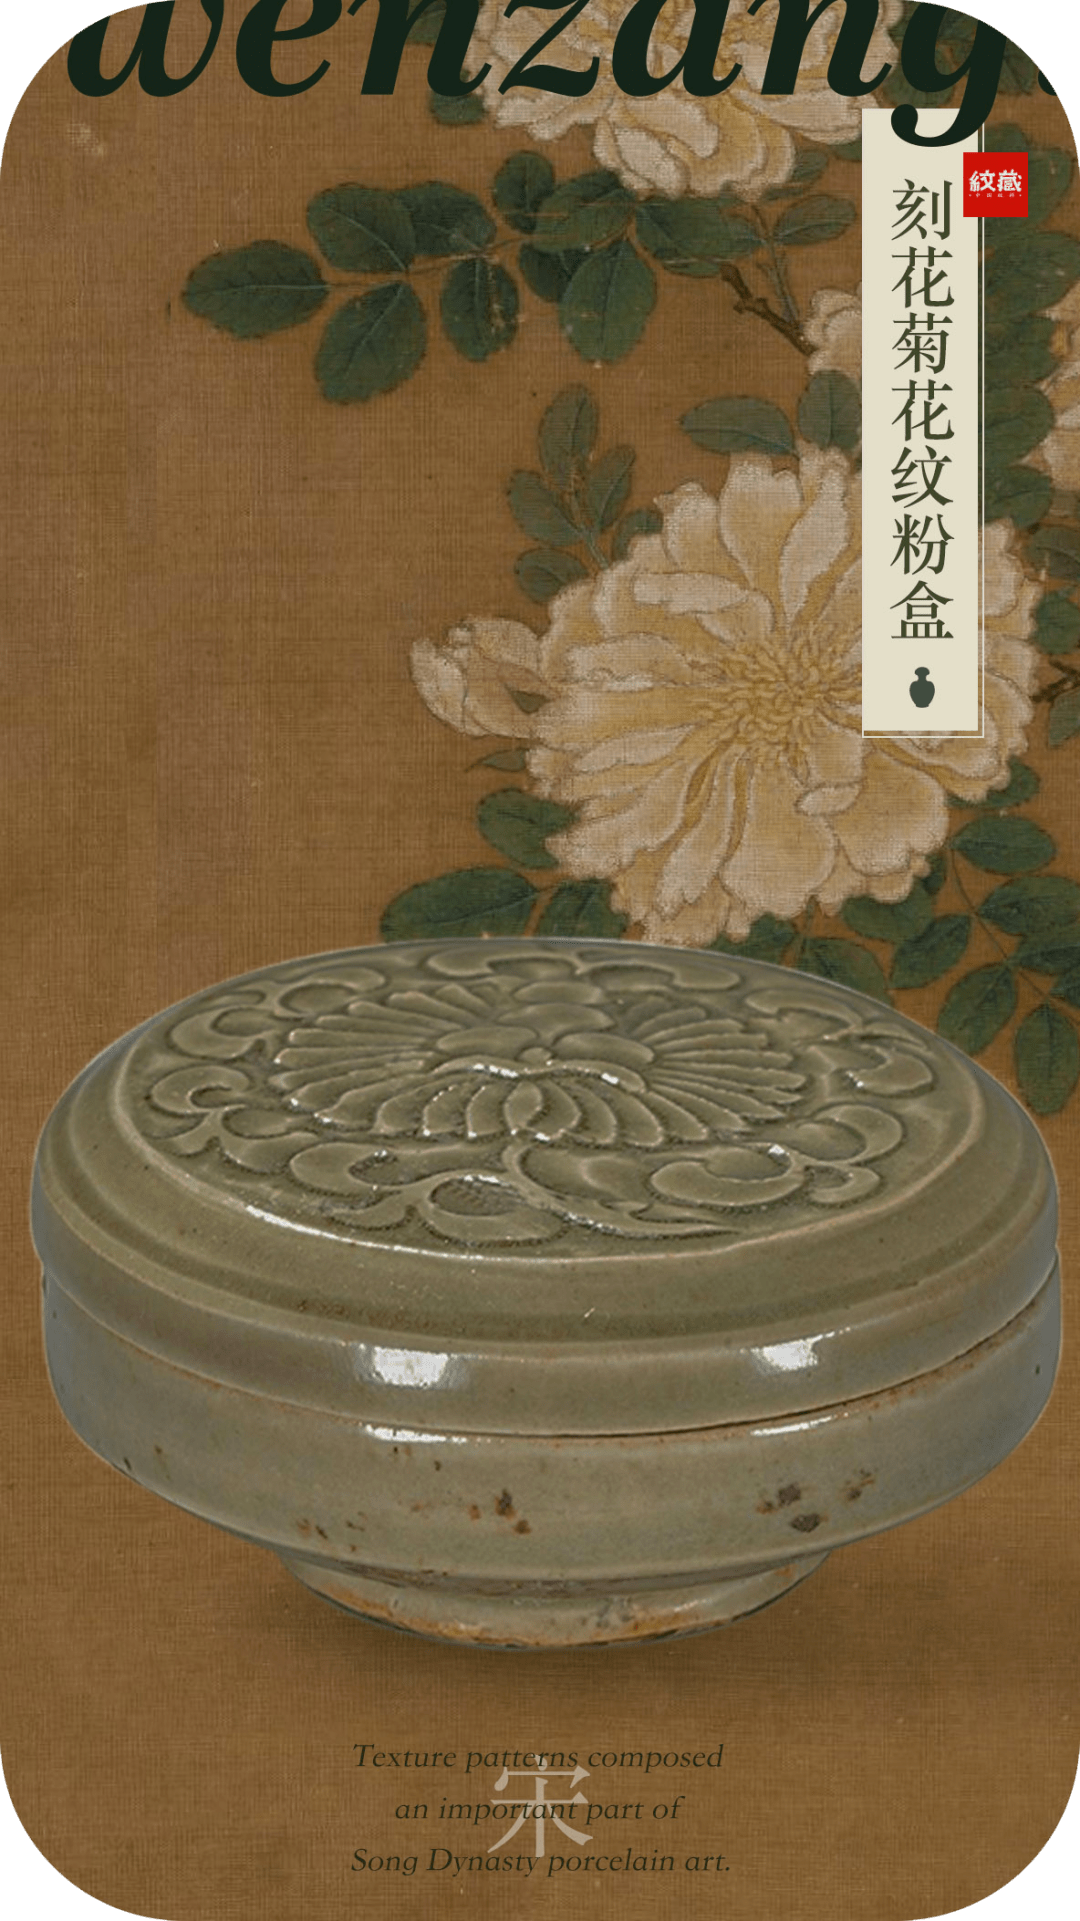 菊花纹是以菊花作为刻画对象的装饰纹样,是中国花卉纹样的重要组成部